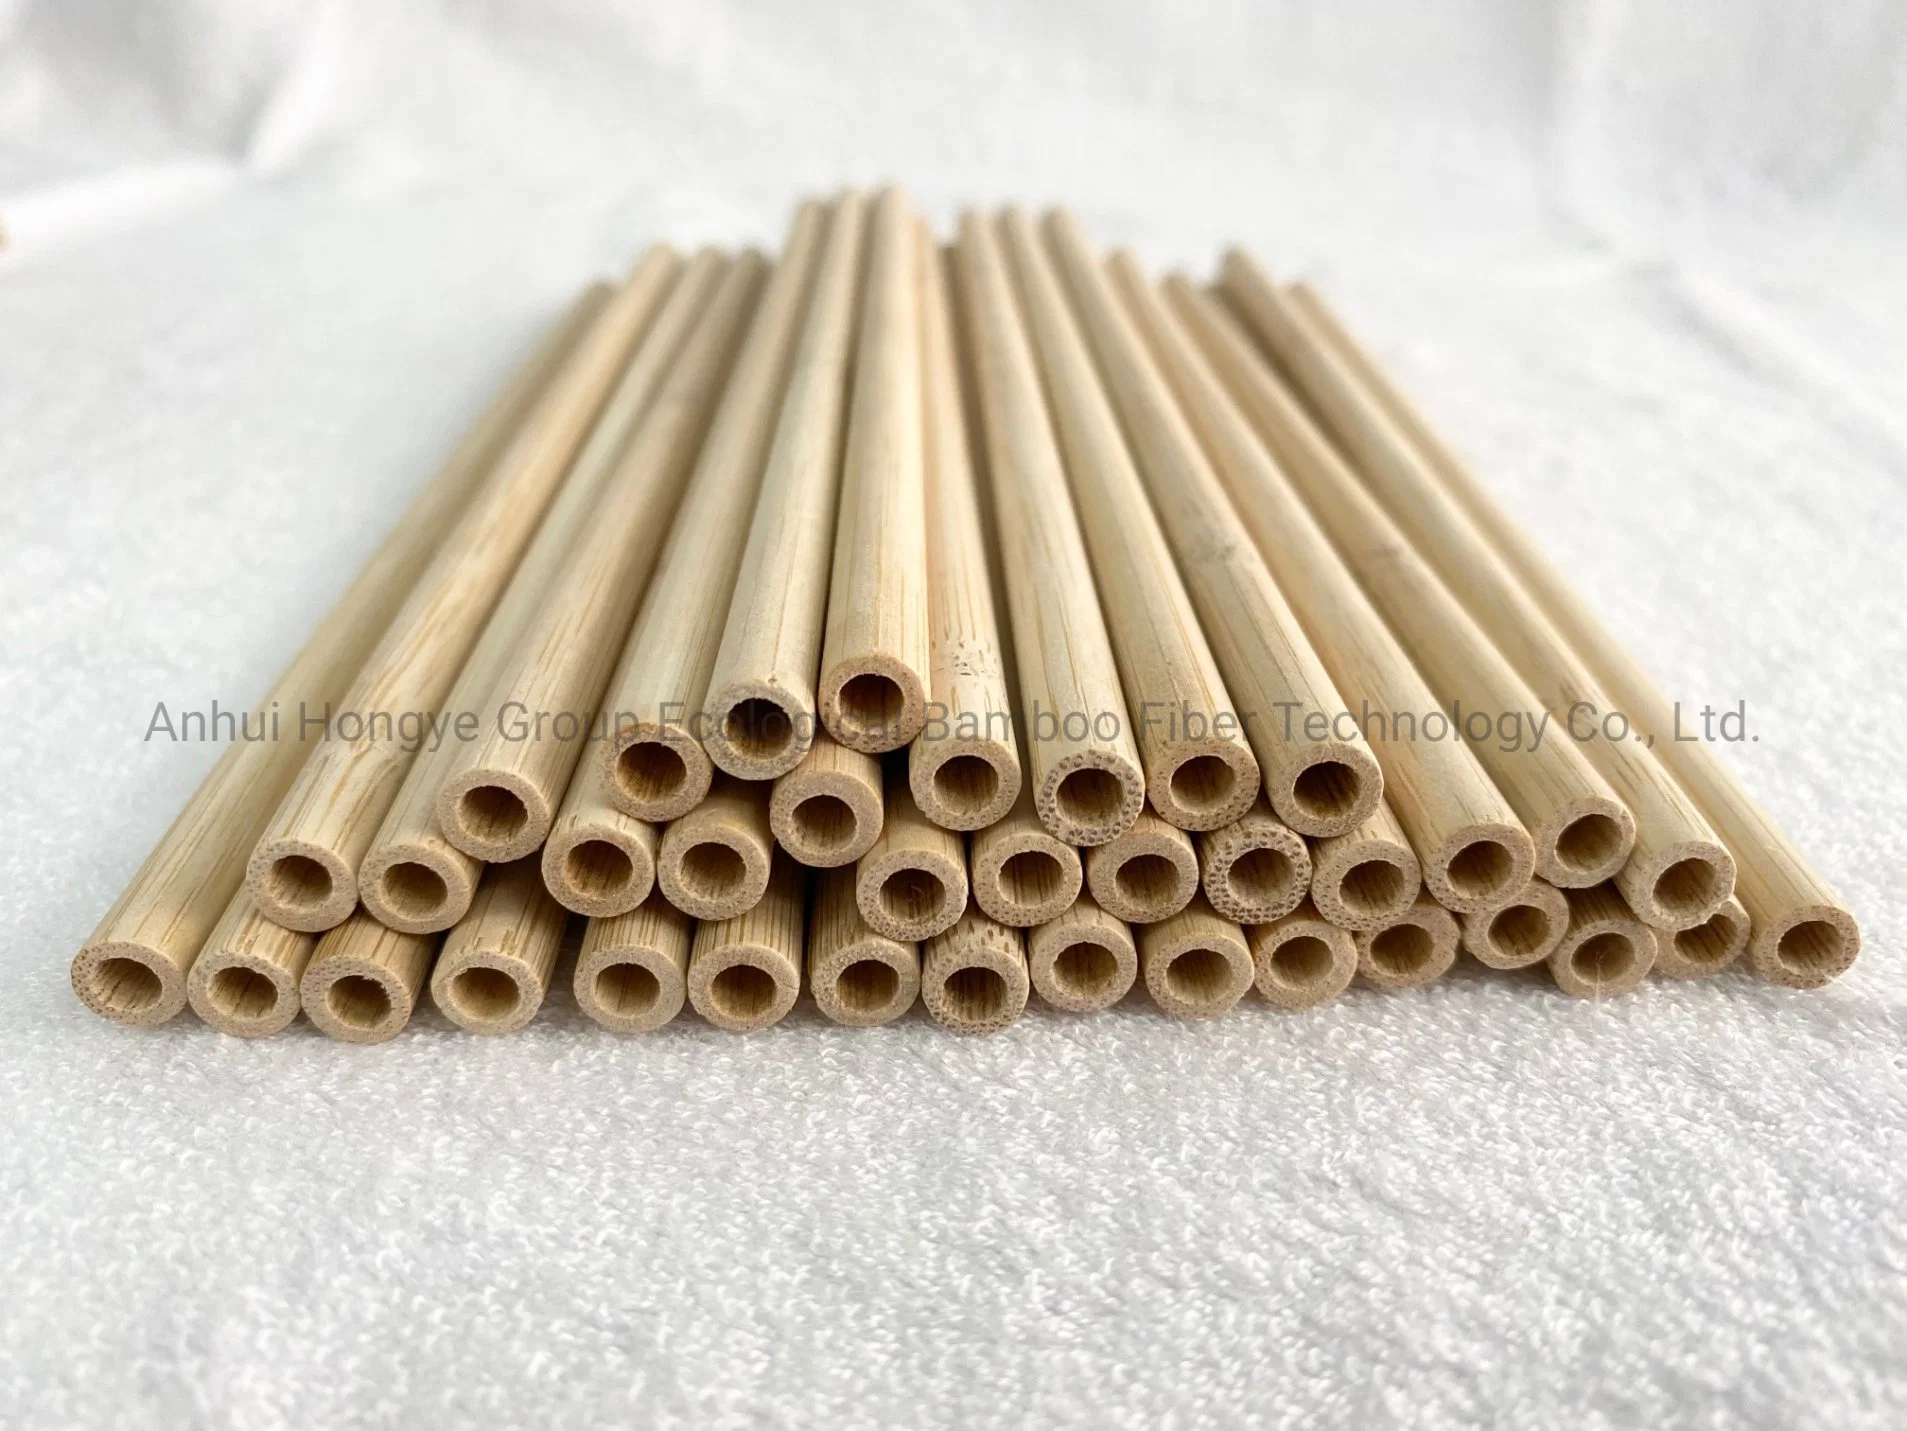 Carbonização descartável 100% biodegradáveis de palha de bambu Venda Quente Eco-Friendly Produto 7.0*200 mm